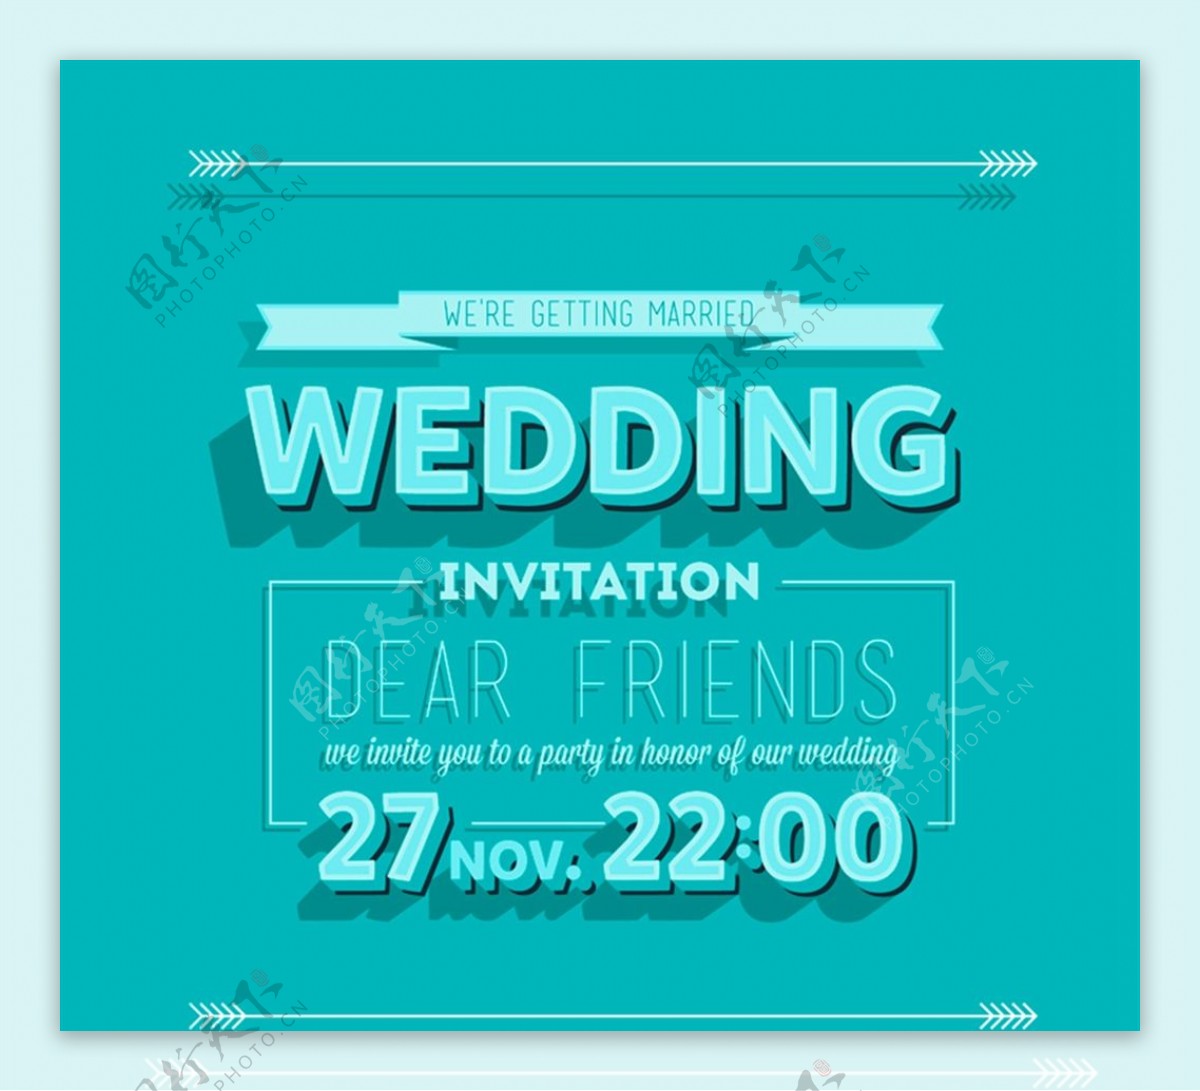 婚礼邀请海报图片